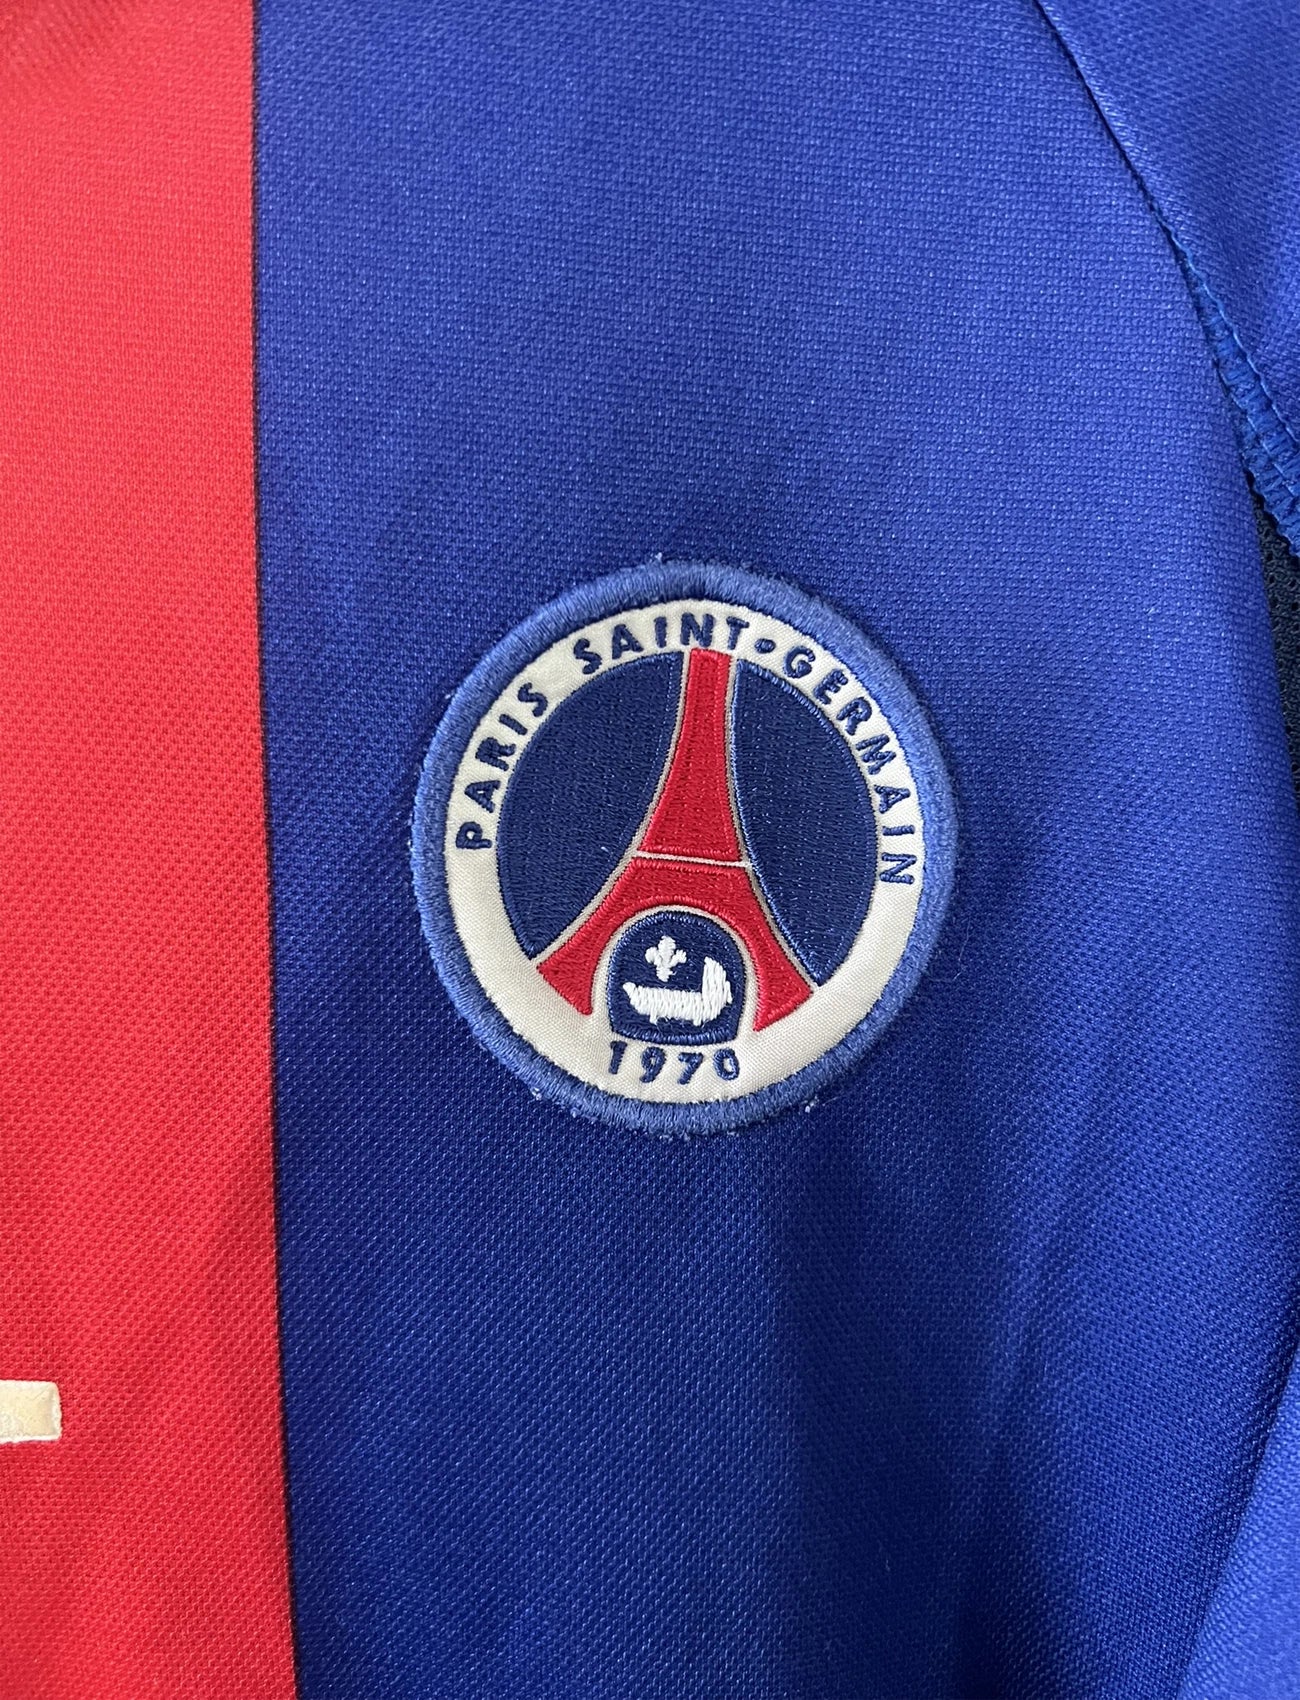 Maillot de foot vintage domicile du PSG de la saison 2000/2001. Le maillot est de couleur bleu et rouge. On peut retrouver l'équipementier nike et le sponsor OPEL